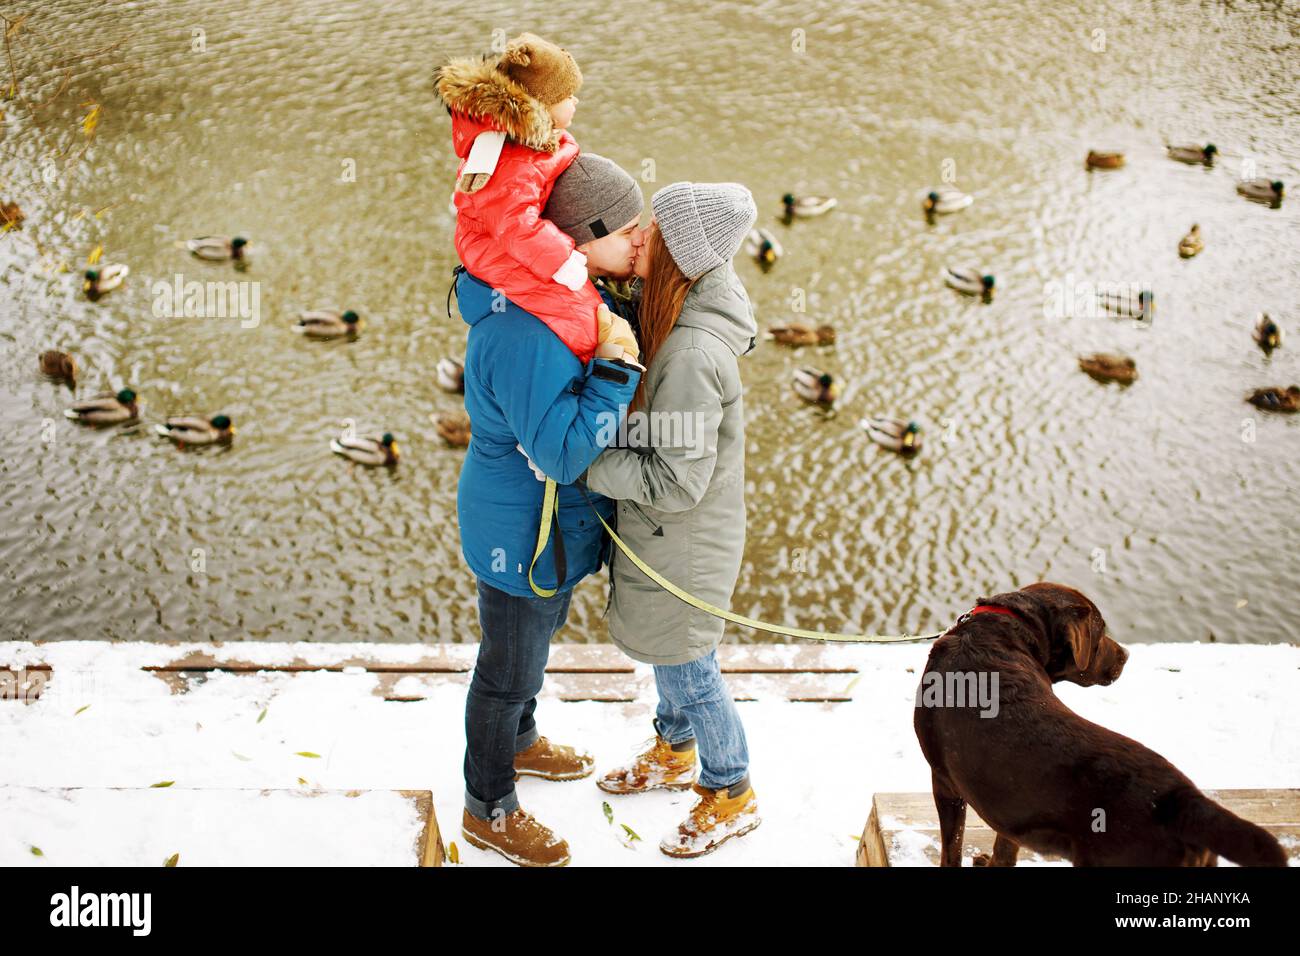 Familienportrait in voller Höhe mit einem Kind und Hund im Winter legeres  Outfit im Freien in Flussnähe mit Entenvögeln, Wochenendaktivitäten und  frischer Luft Stockfotografie - Alamy